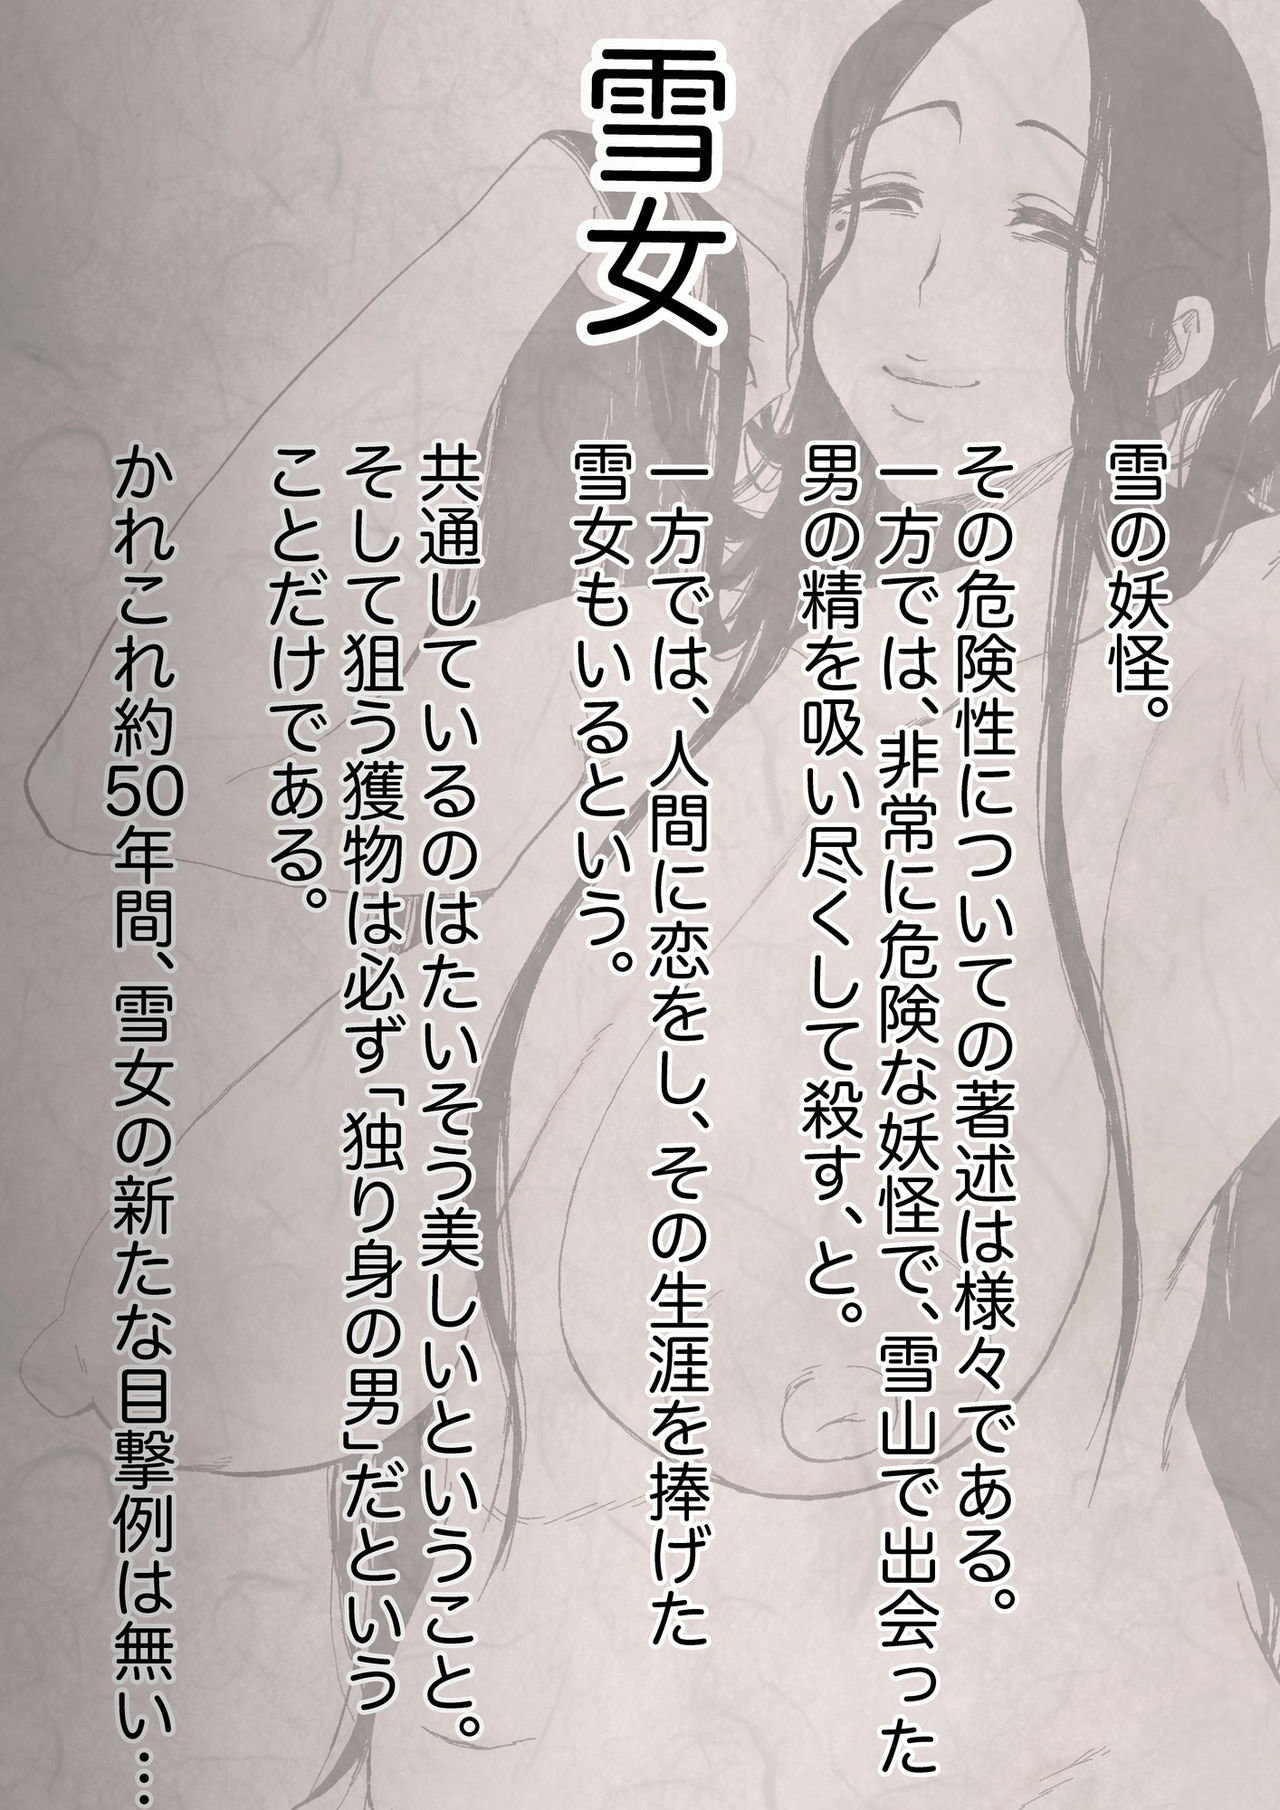 &#91;Camekirin&#93; Zetsumetsu Sunzen Yukionna - 1